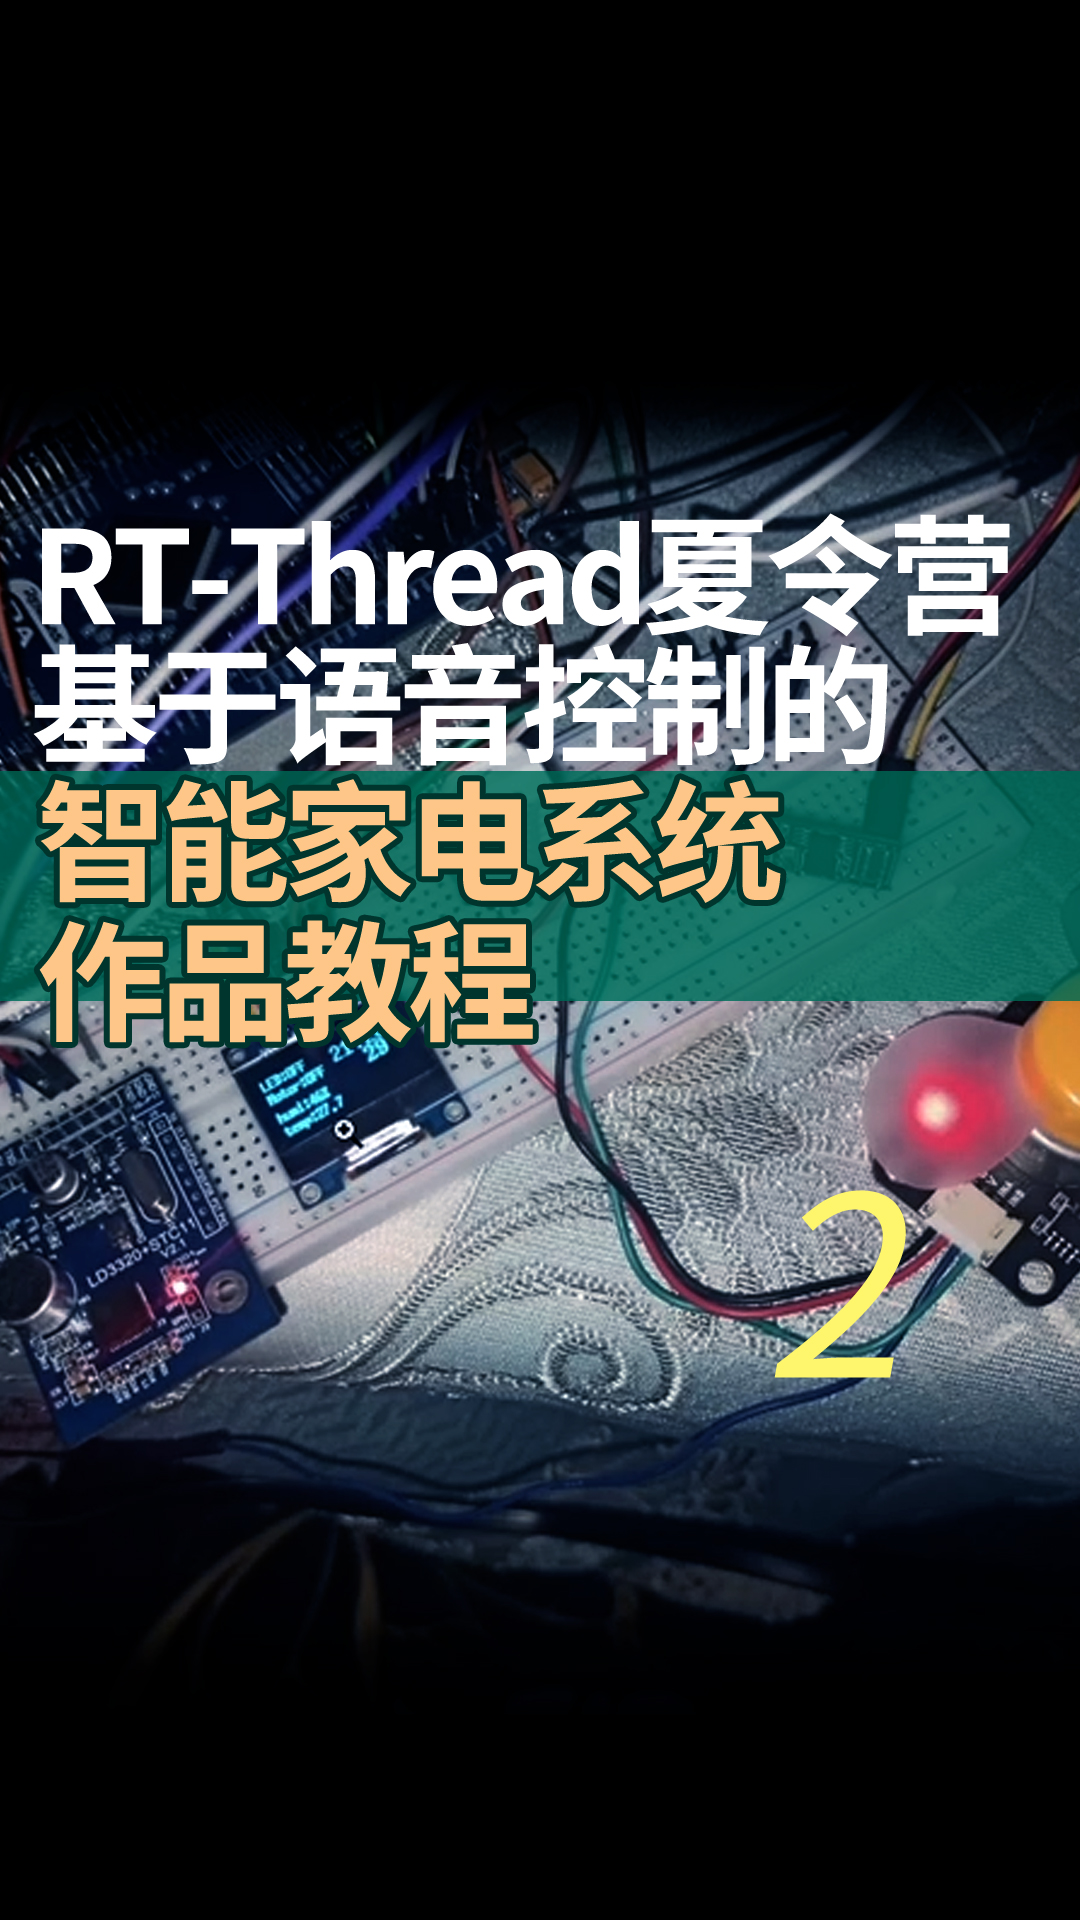 RT-Thread夏令营基于语音控制的智能家电系统作品教程 - 2软件准备